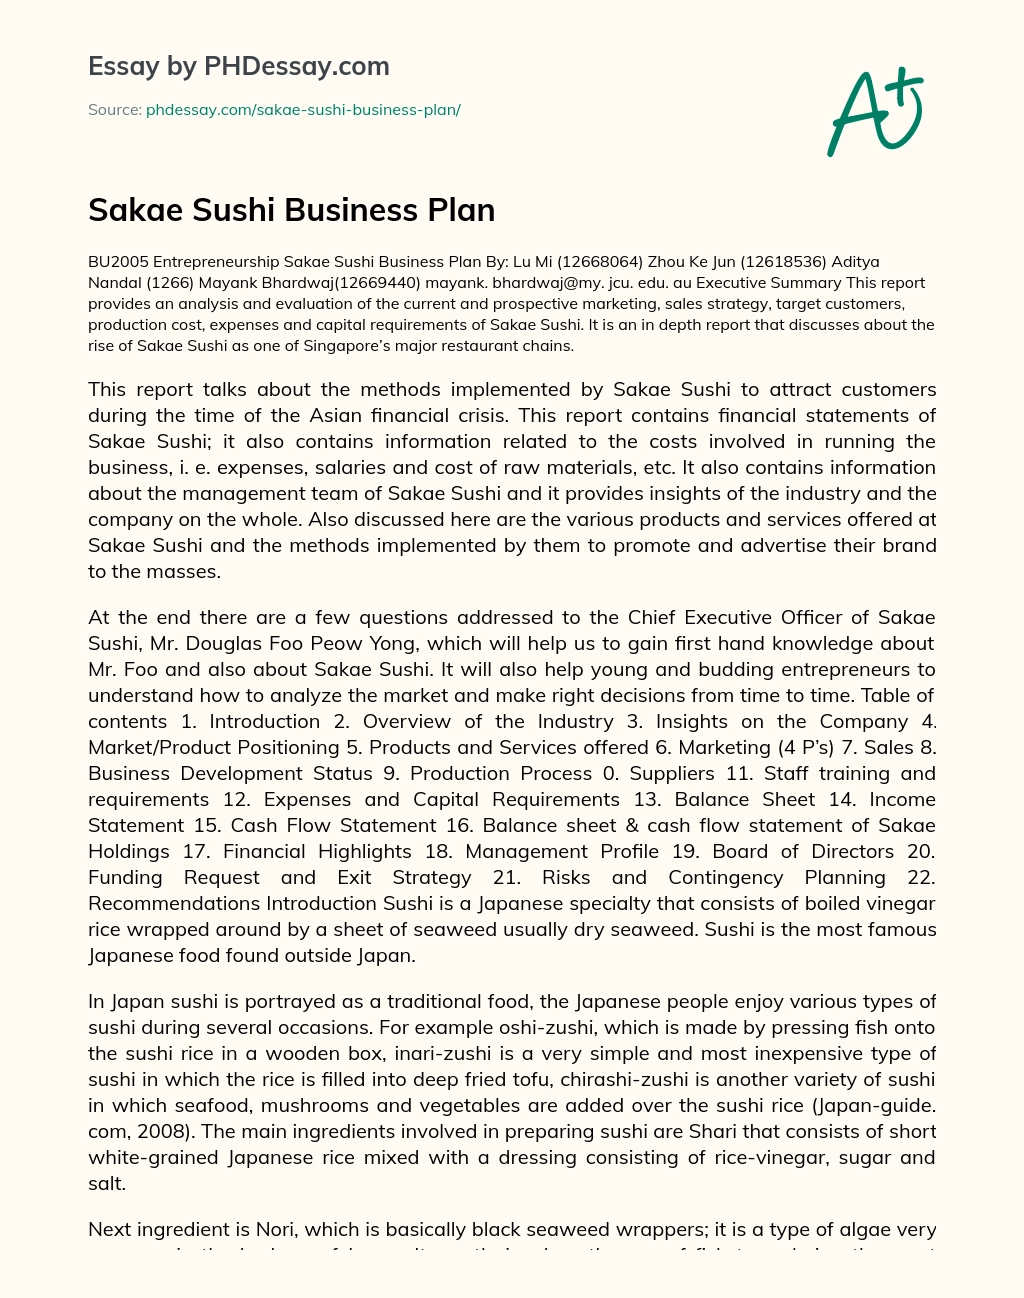 Sakae Sushi Business Plan essay